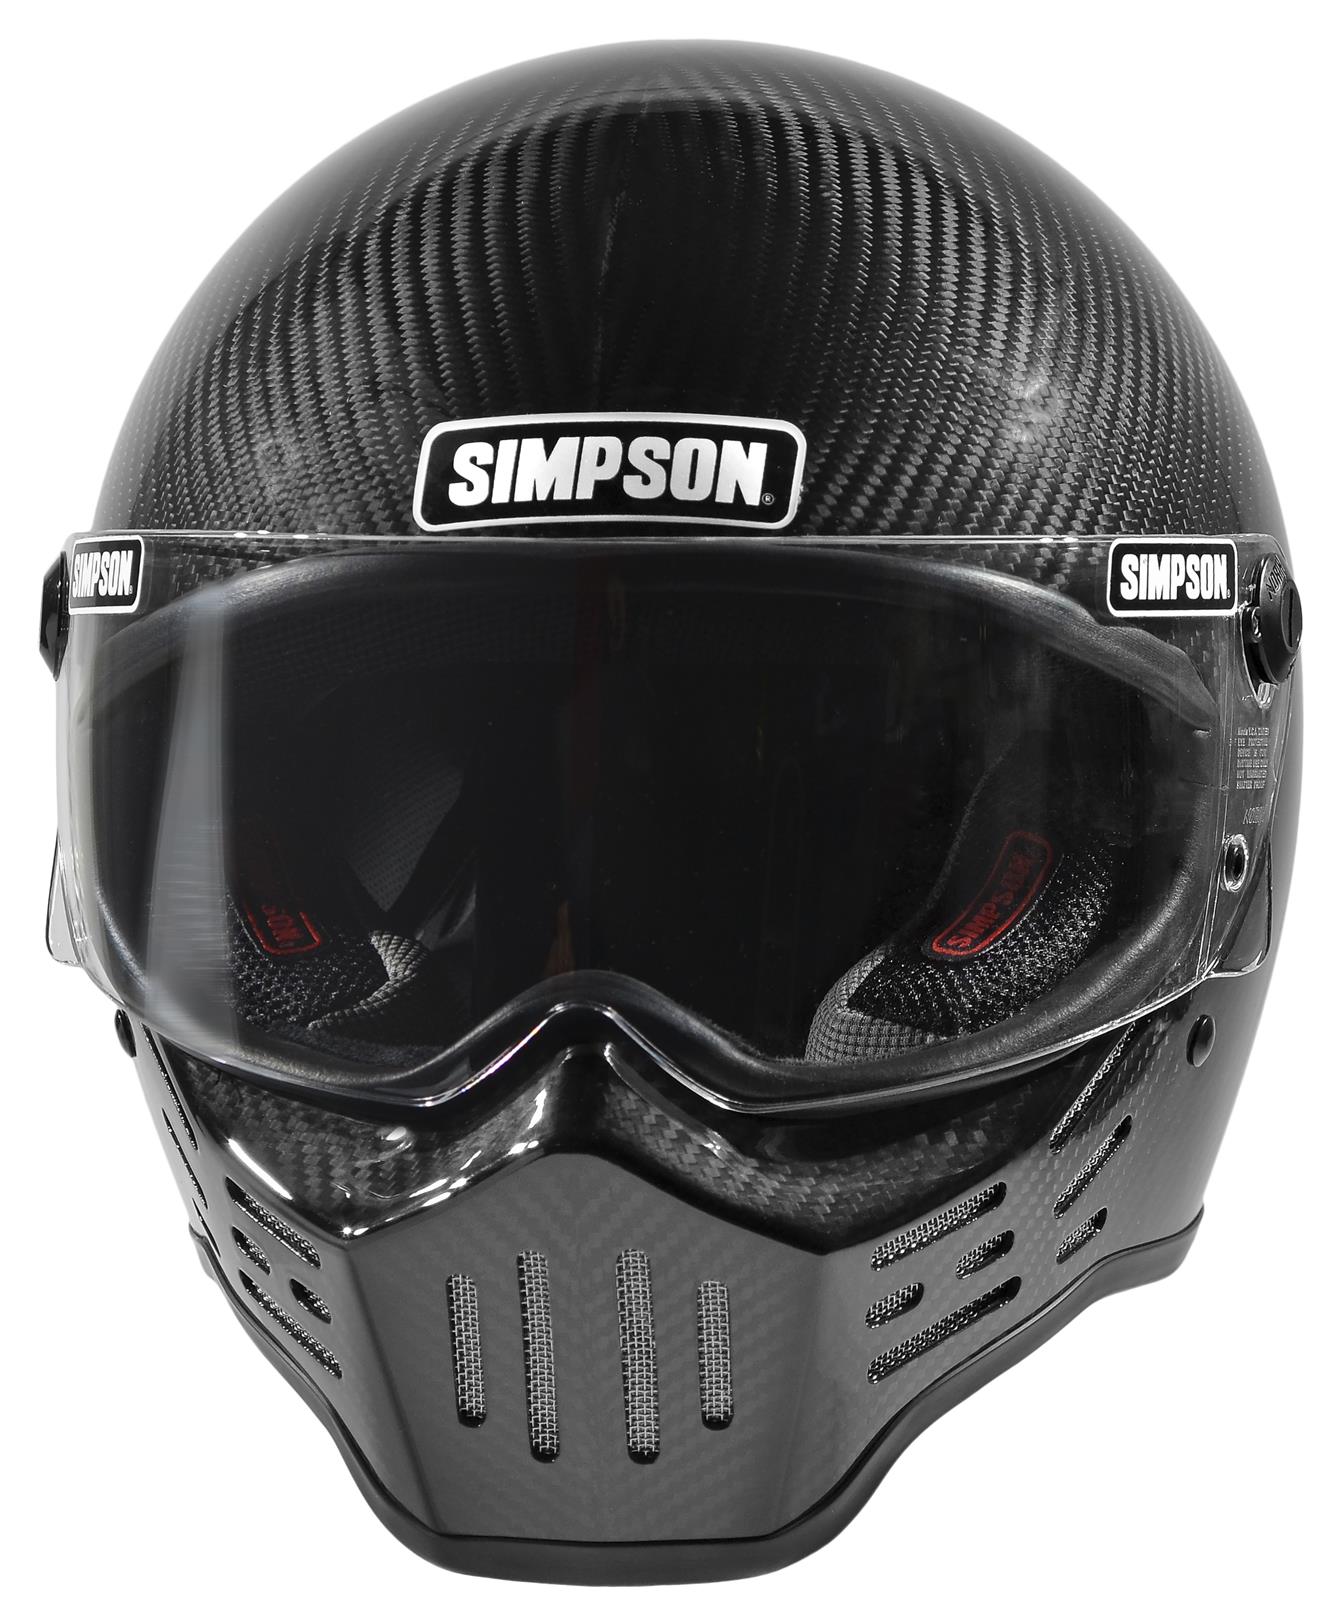 Simpson Racing M30DXLC Simpson M30 Bandit Carbon Fiber Helmets | Summit